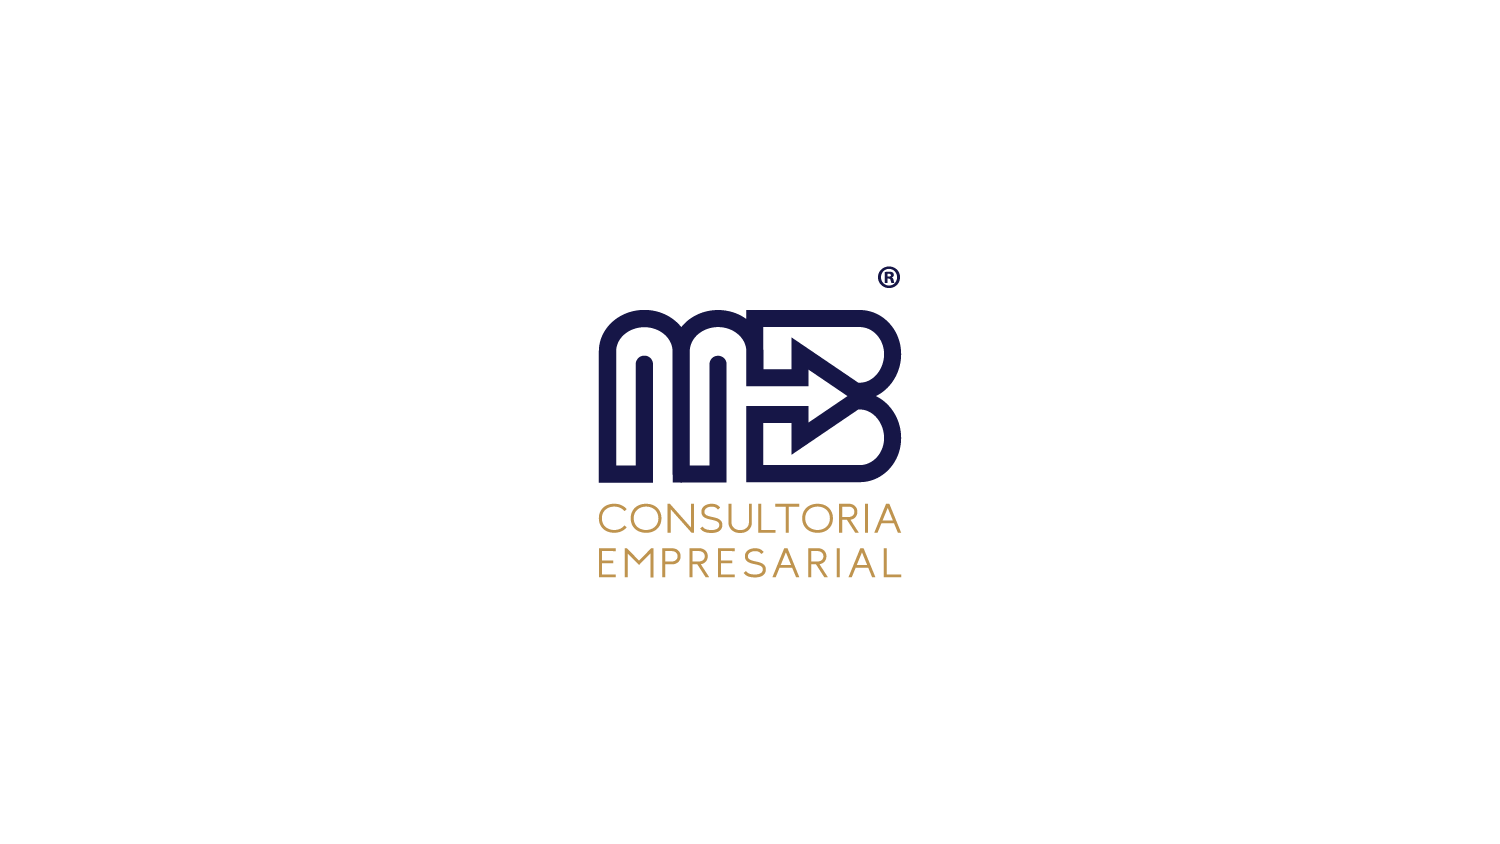 MB Consultoria Empresarial